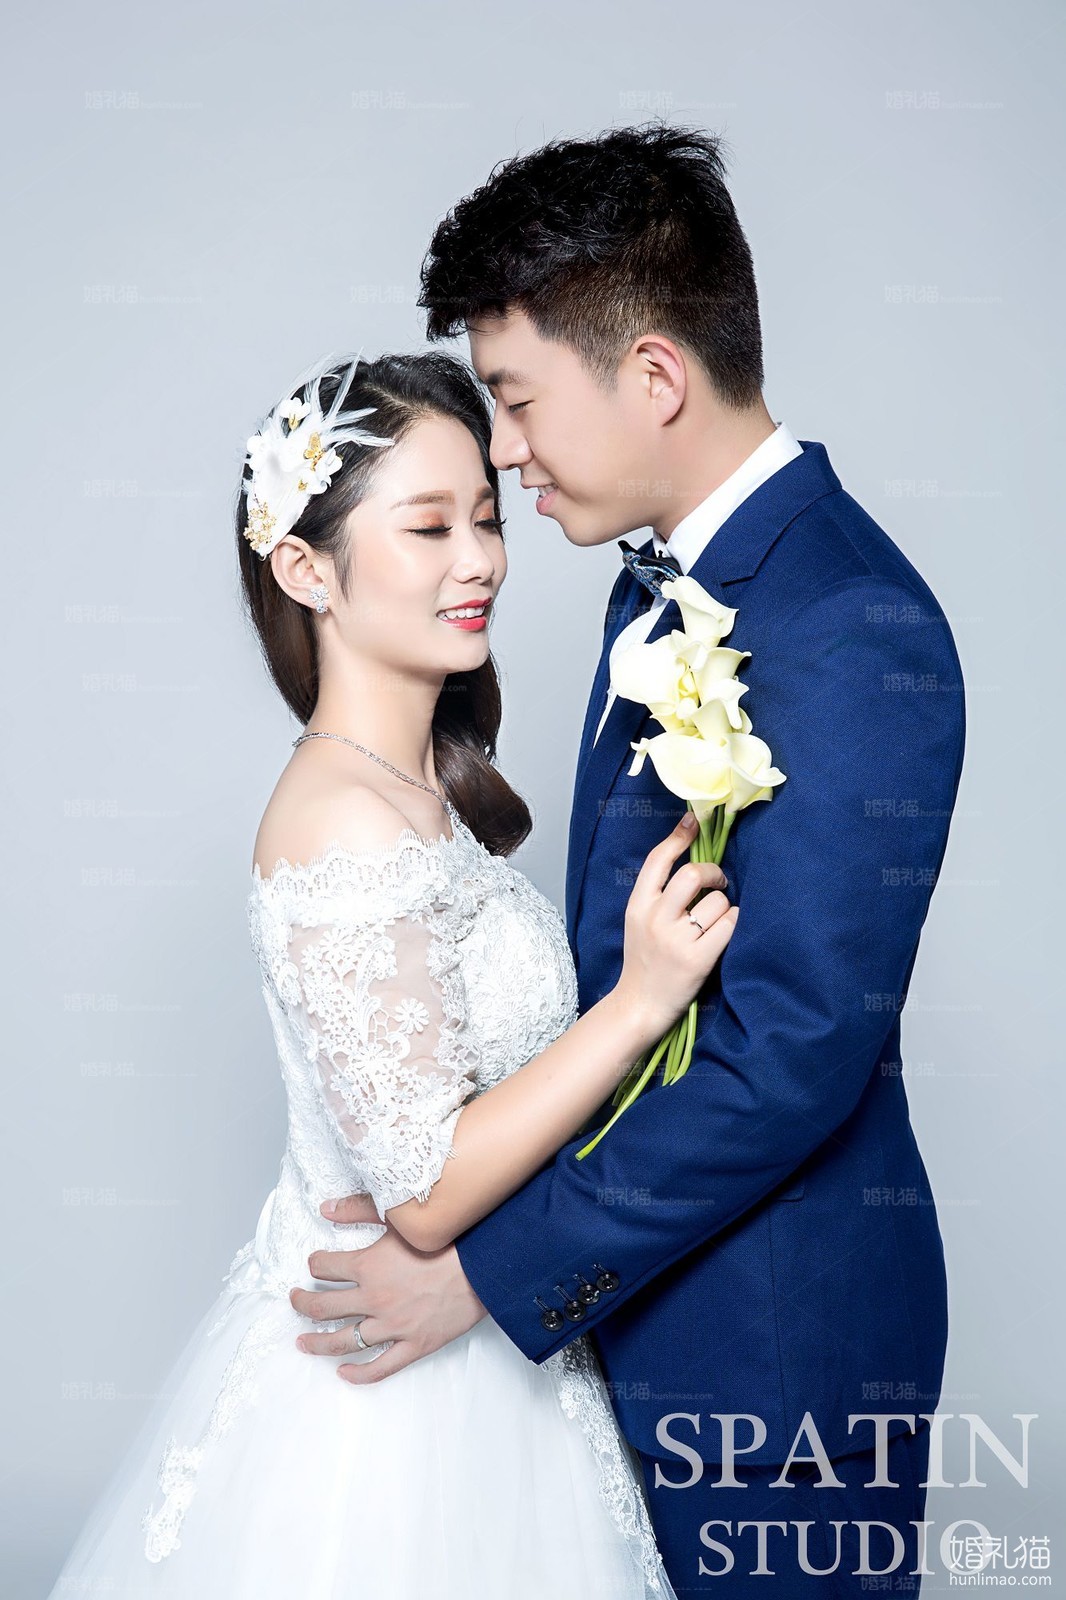 2017年6月上海结婚照,,上海婚纱照,婚纱照图片